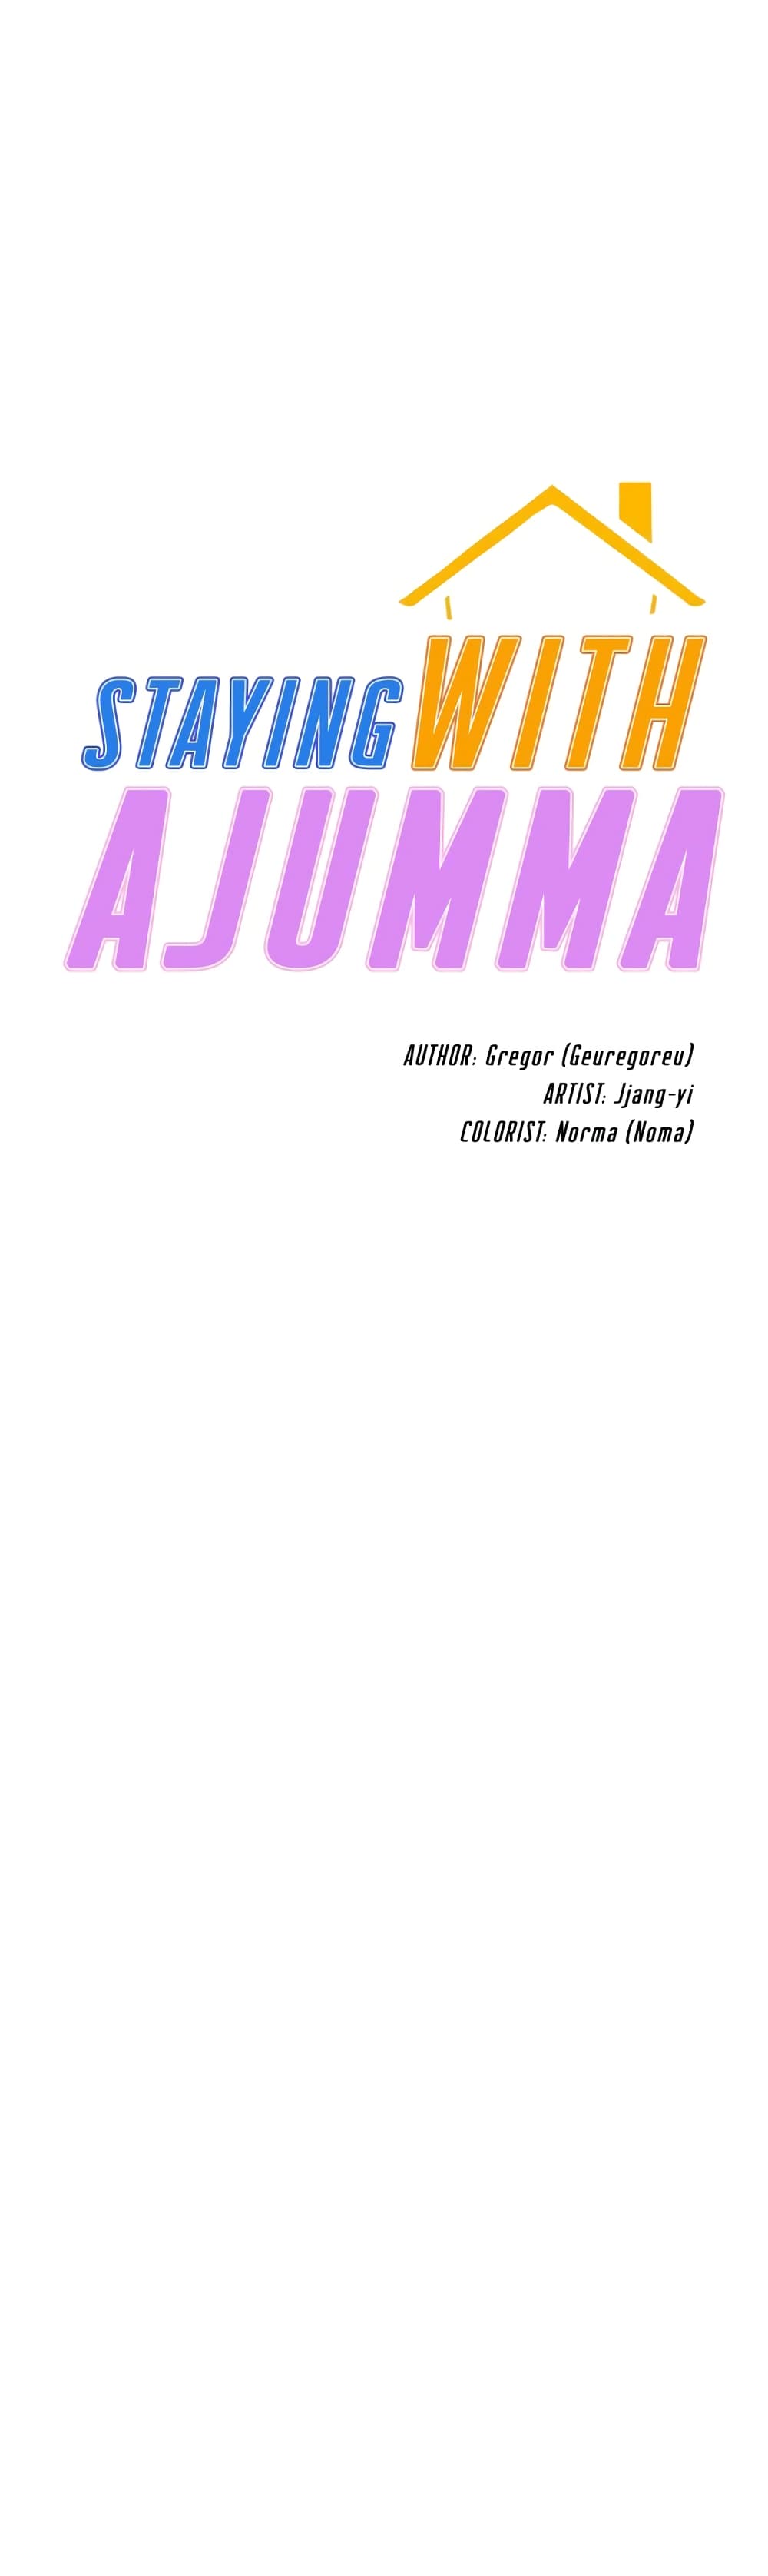 Staying with Ajumma 56-56